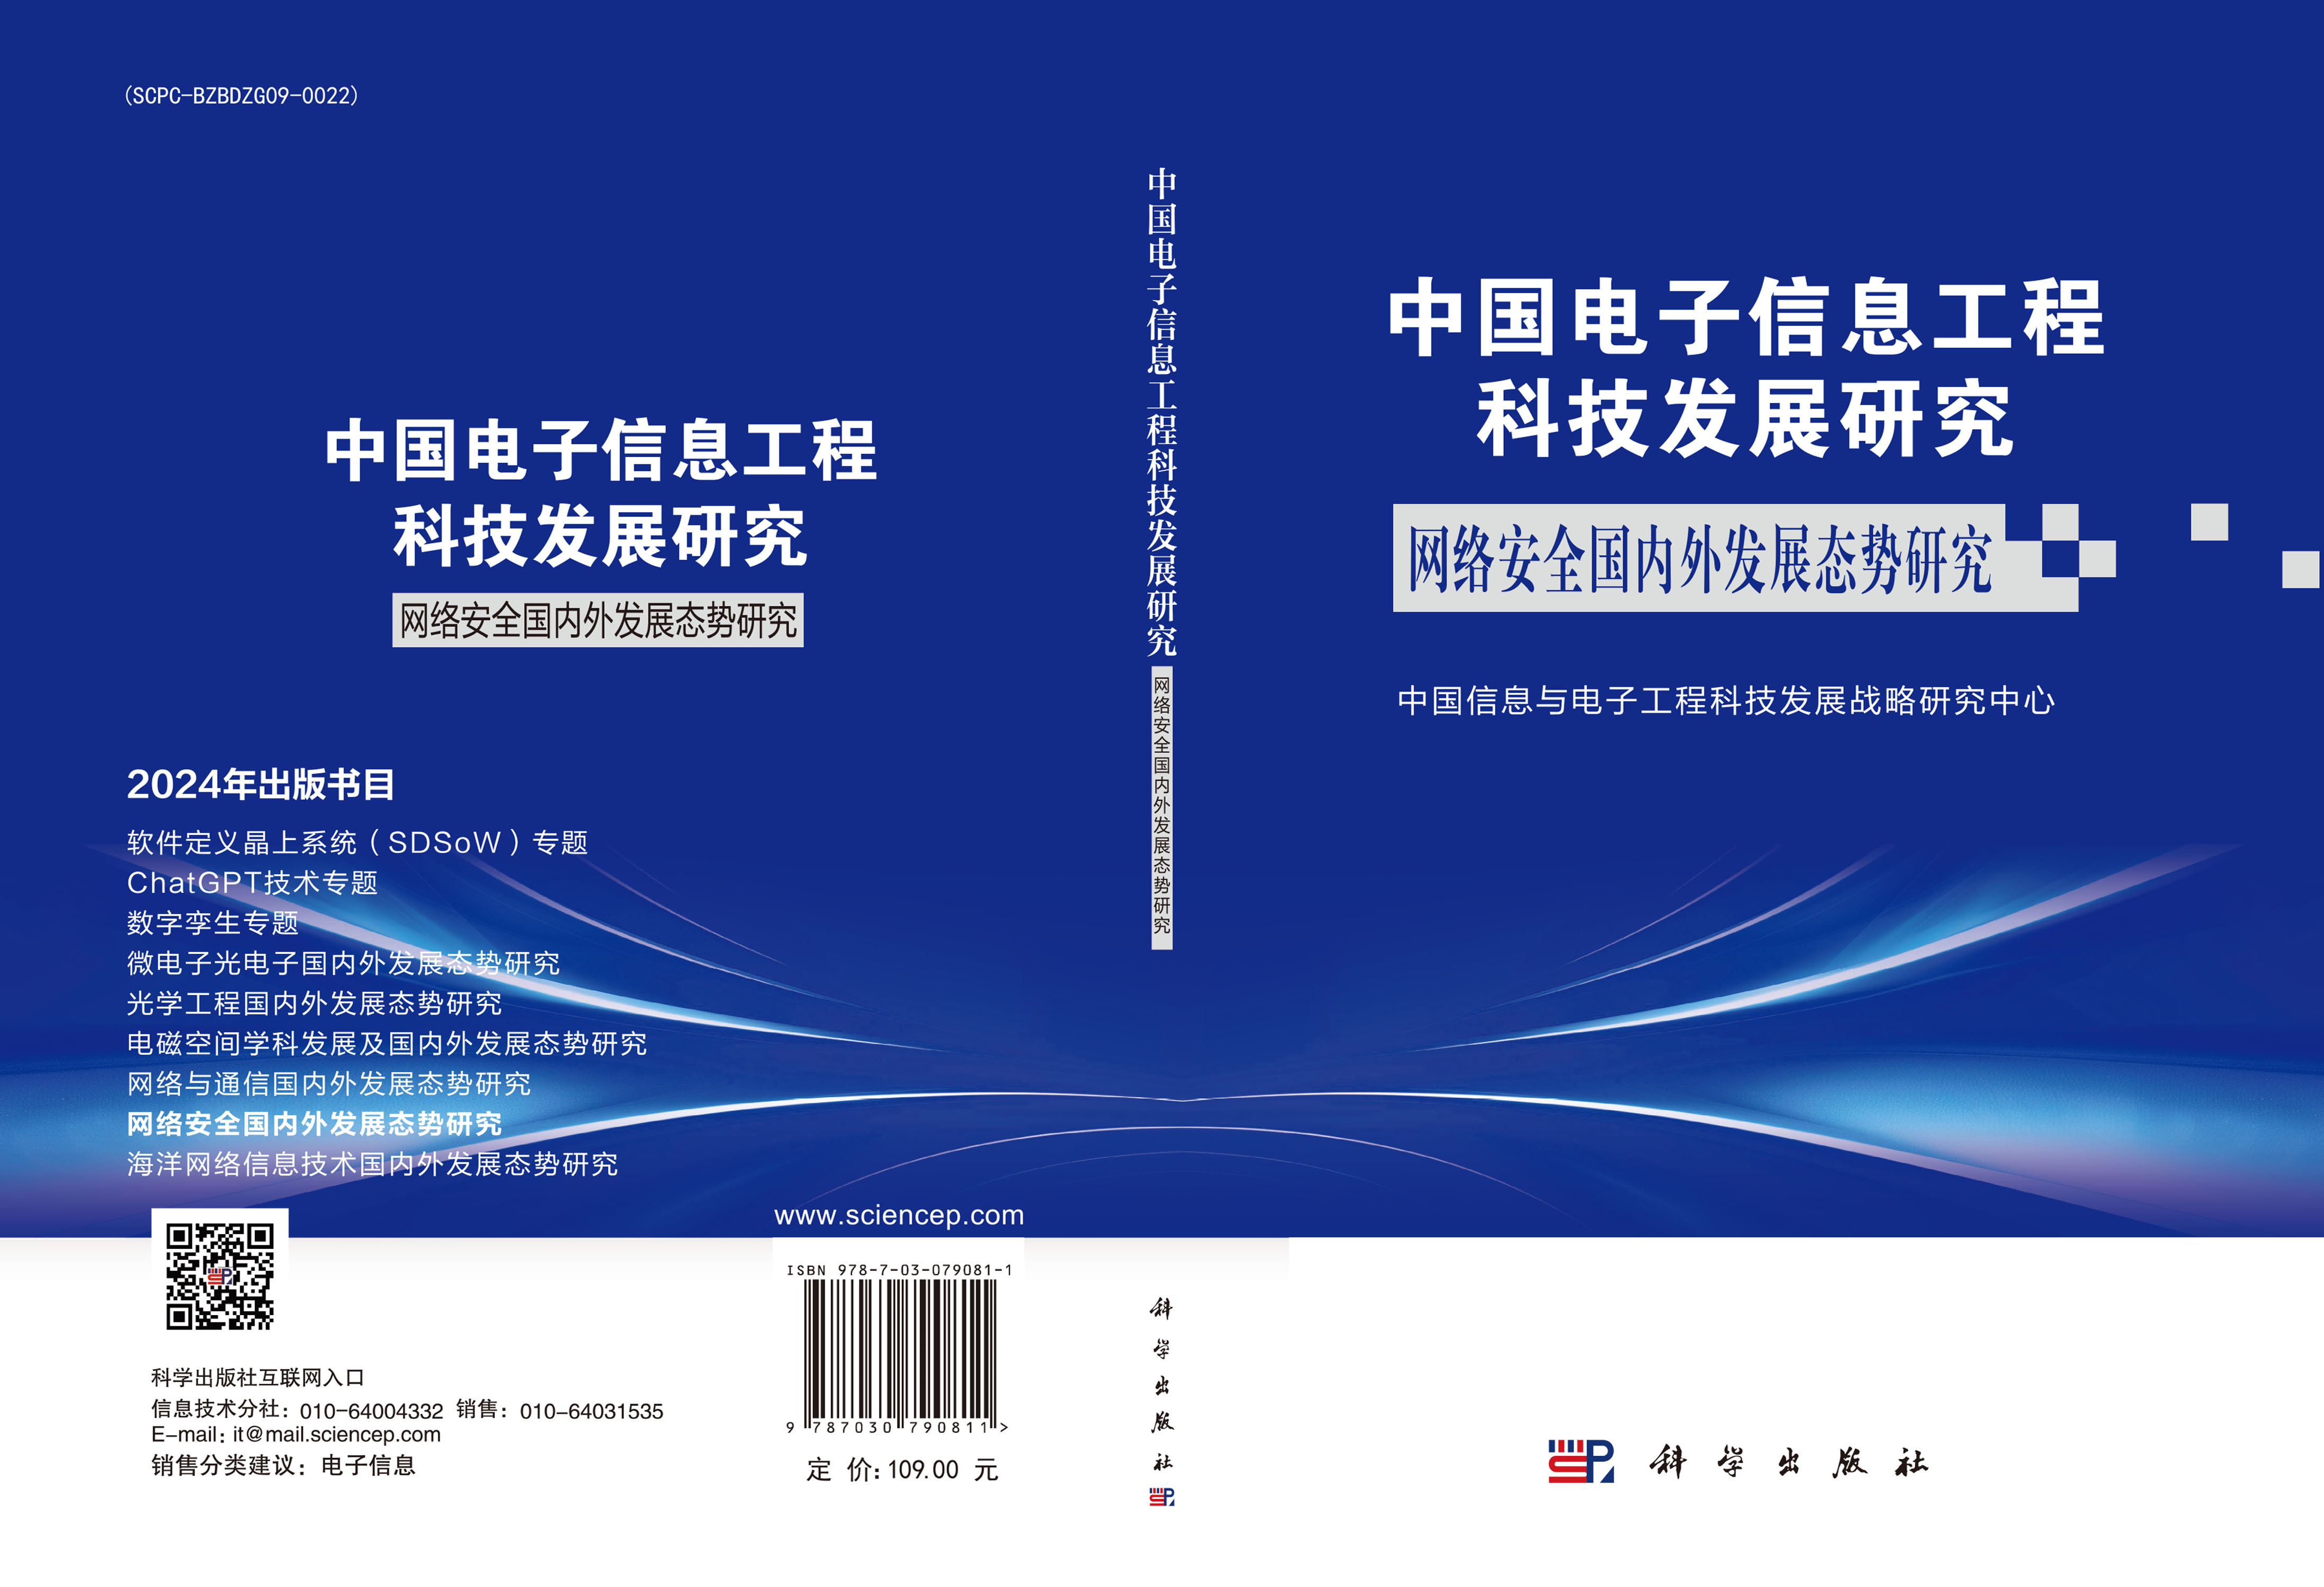 中国电子信息工程科技发展研究 网络安全国内外发展态势研究